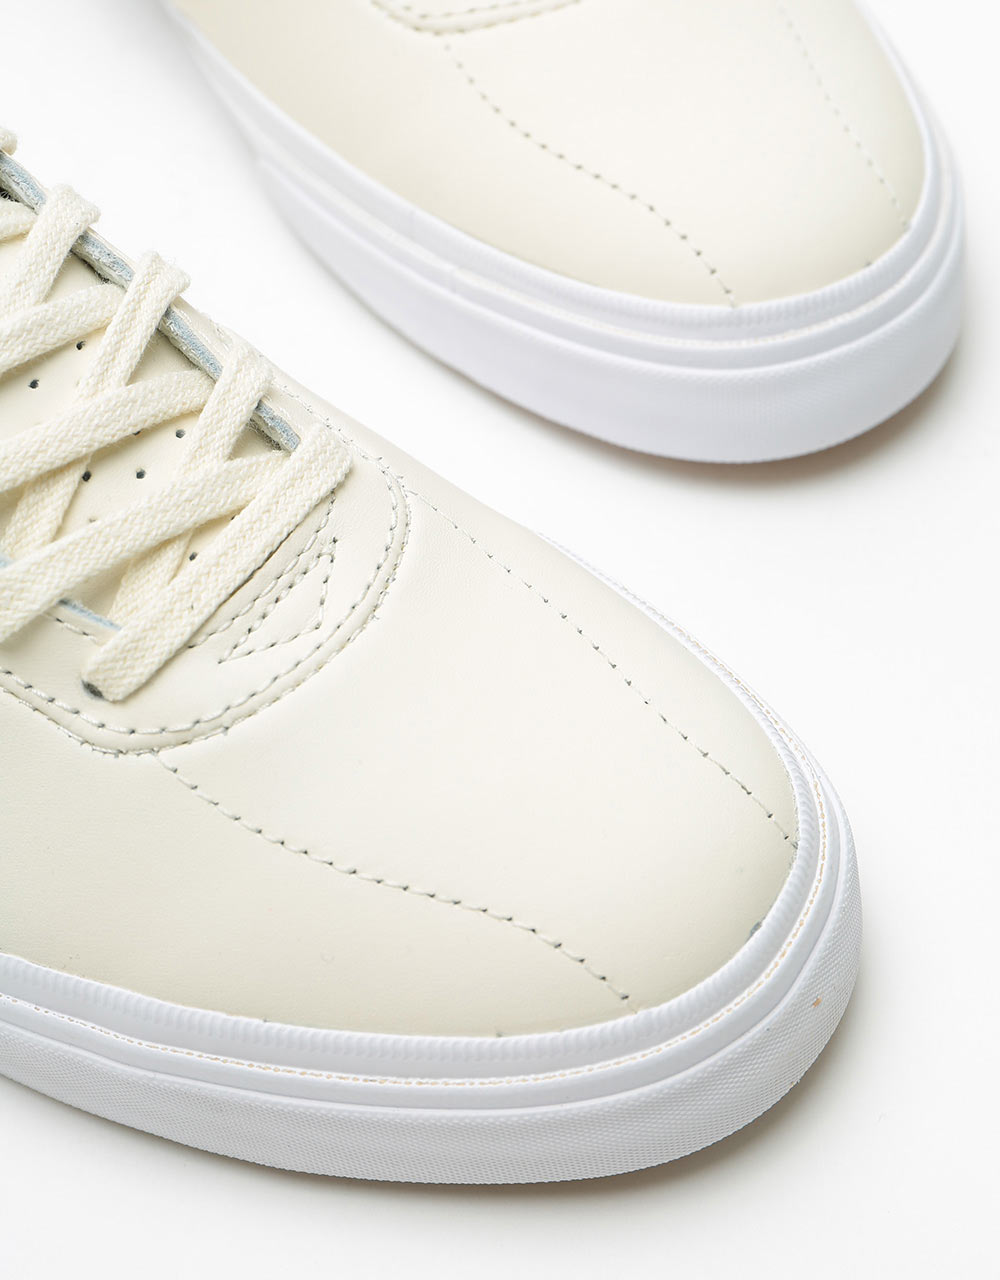 Converse Louie Lopez Pro Ox Skate Shoes - Egret/Egret/White